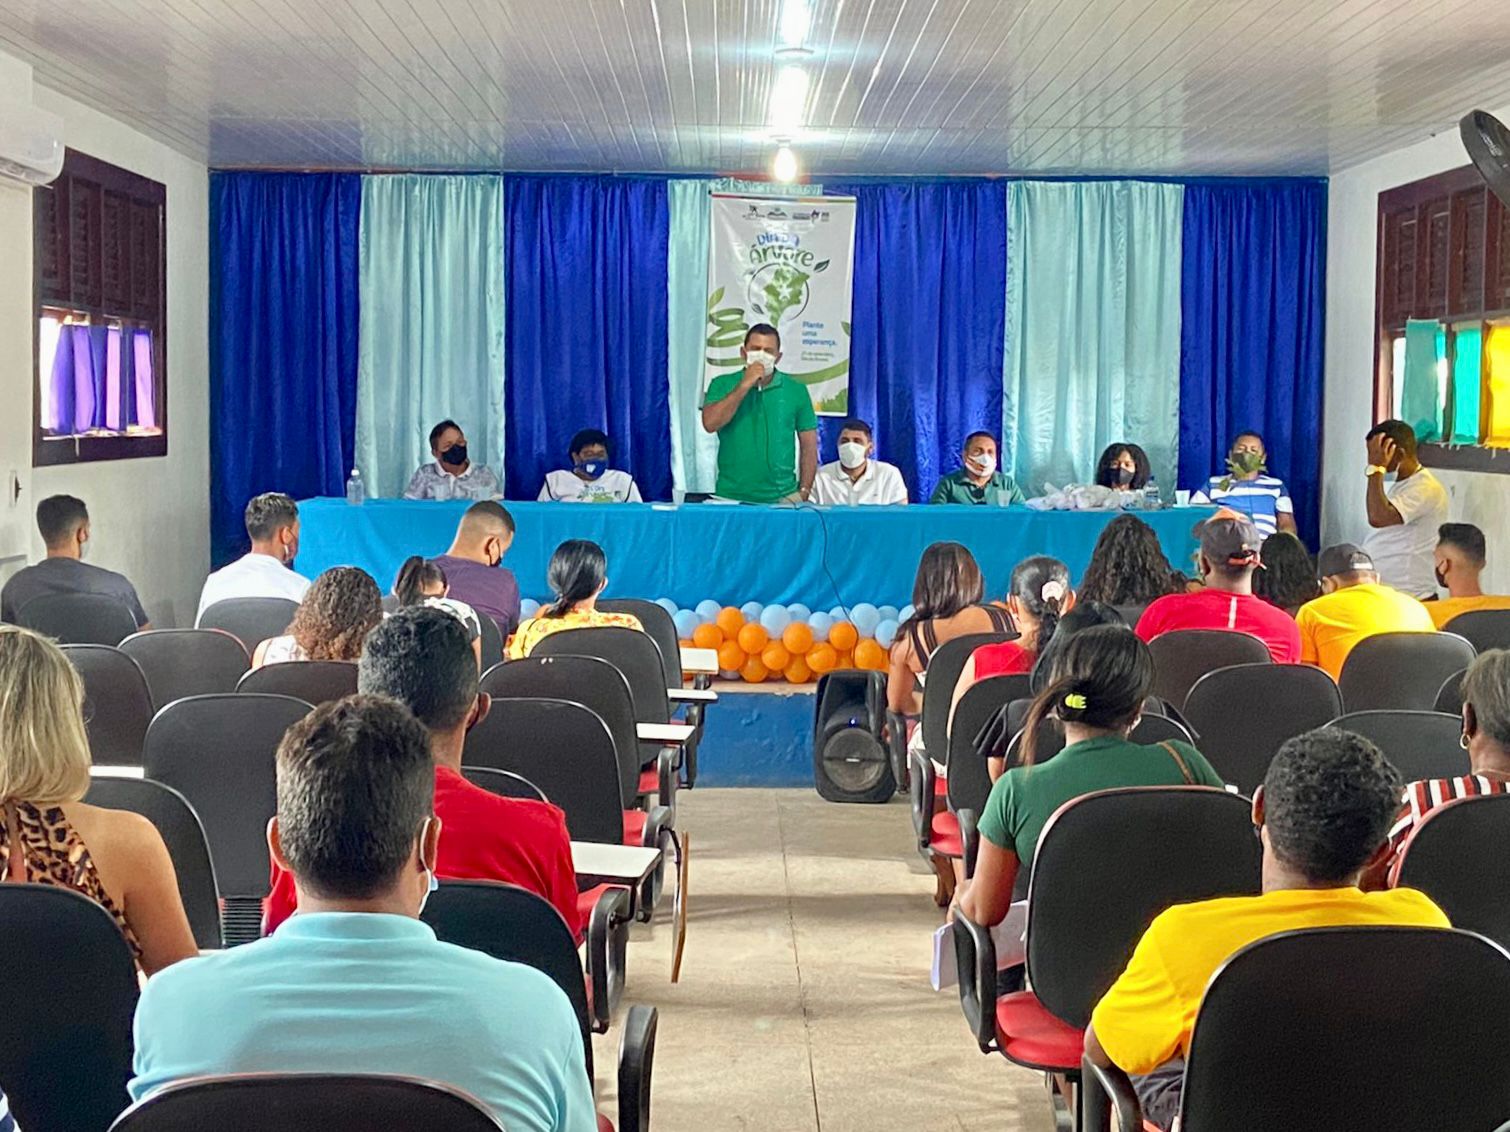 O Dia da Árvore 21 de setembro em São João Batista foi celebrado com uma solenidade promovida pelo Governo do Estado em parceria com a Prefeitura 8